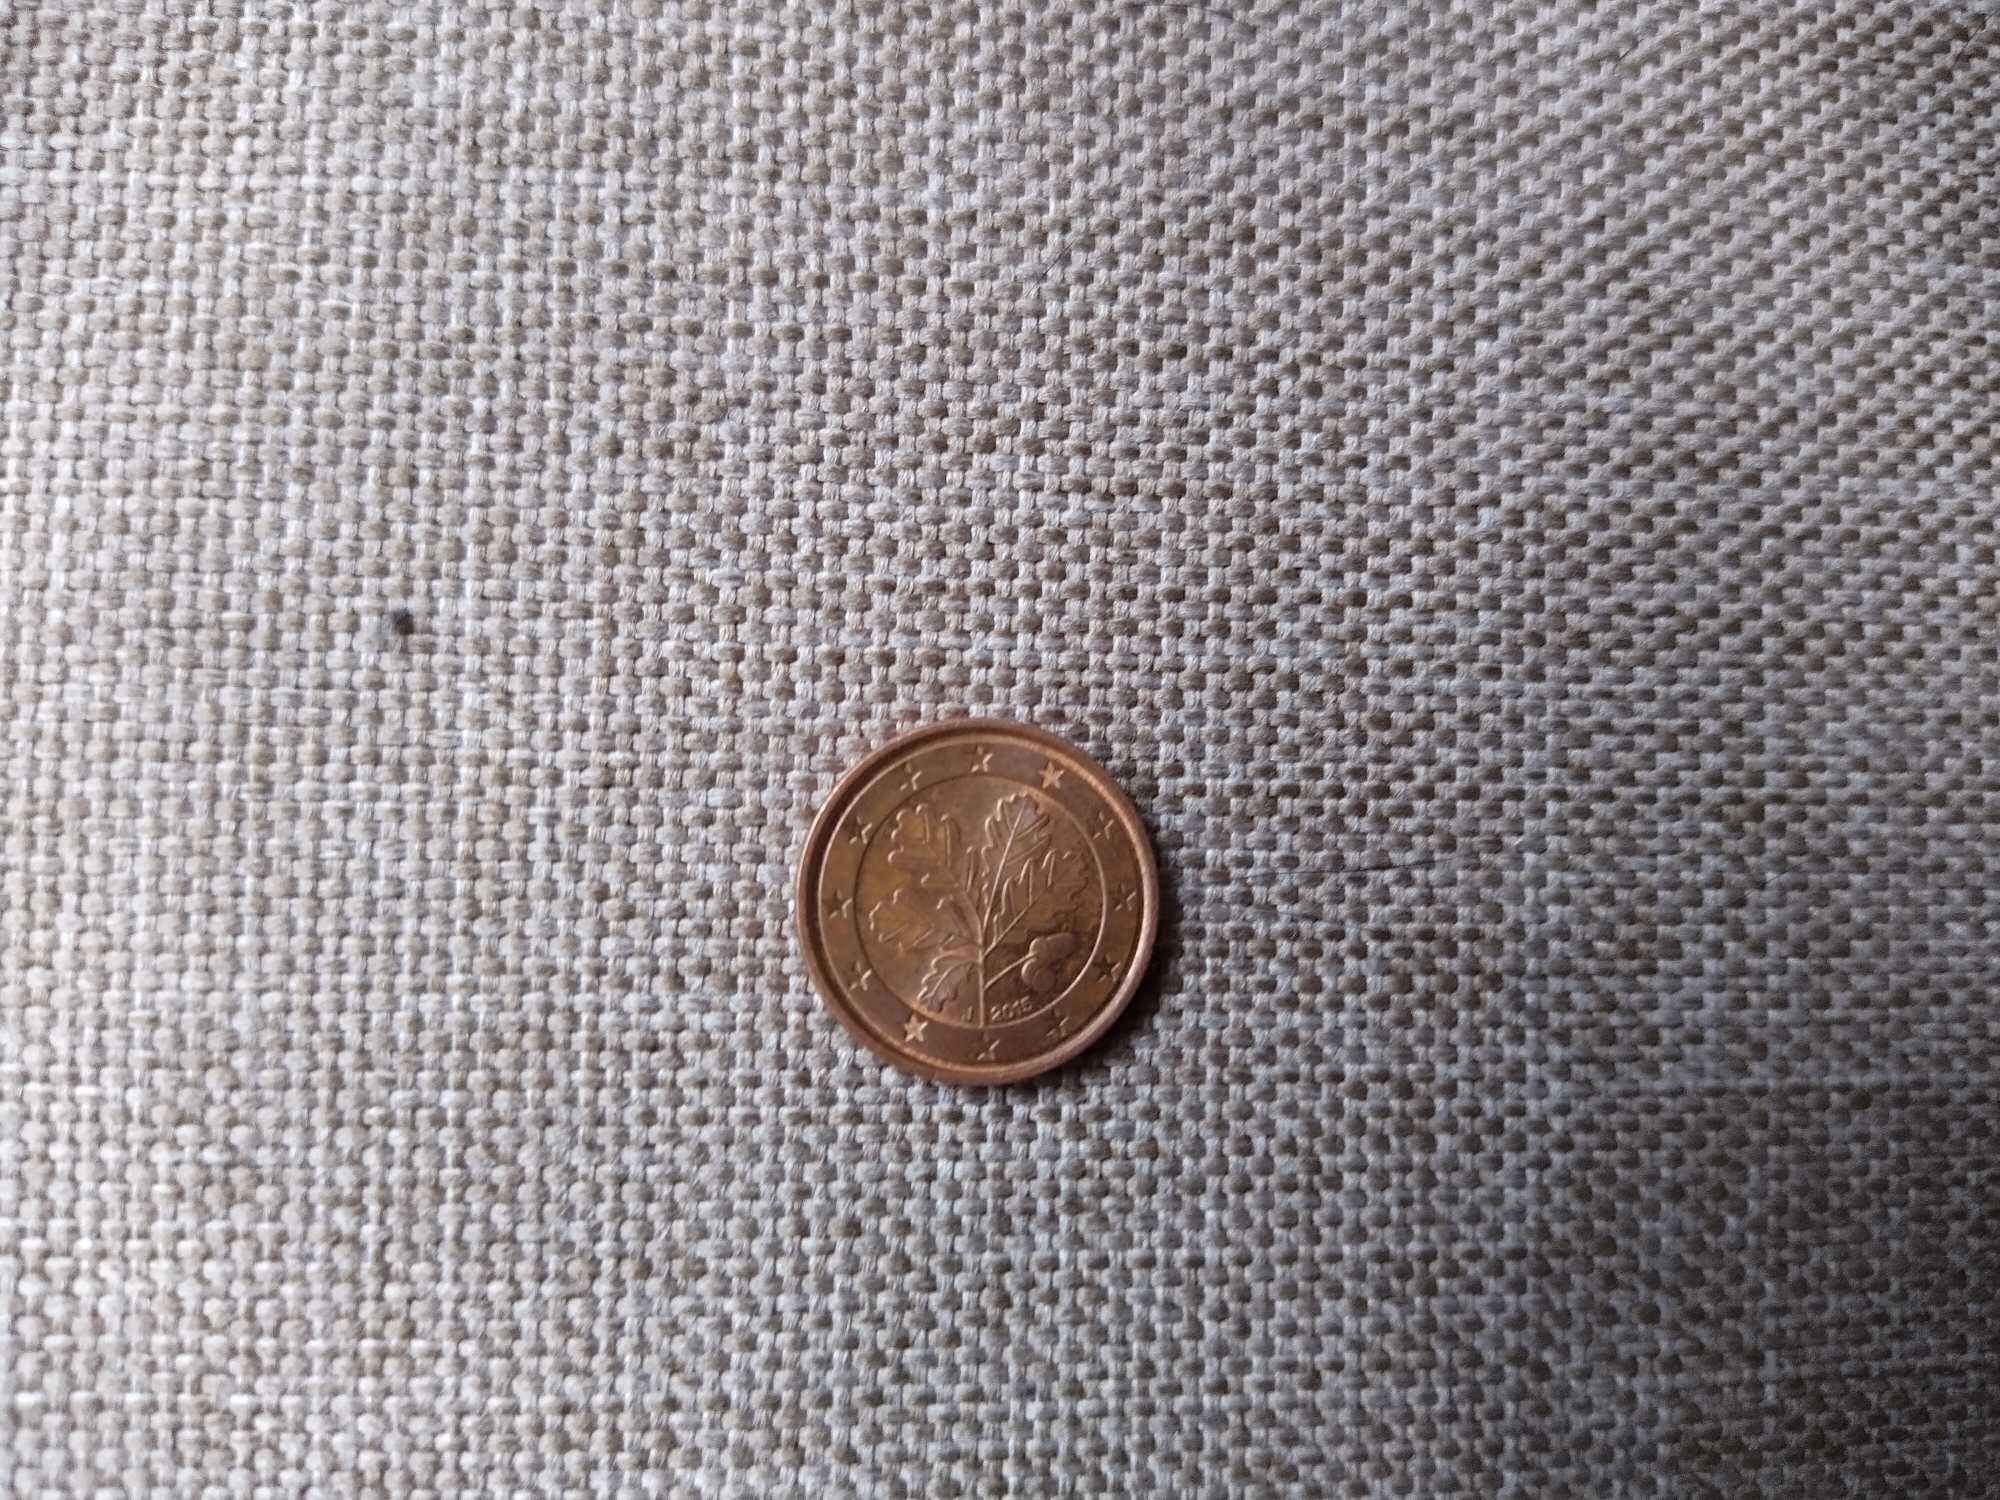 Moneta kolekcjonerska 1 euro cent (J) 2015r.Destrukt menniczy.Unikat